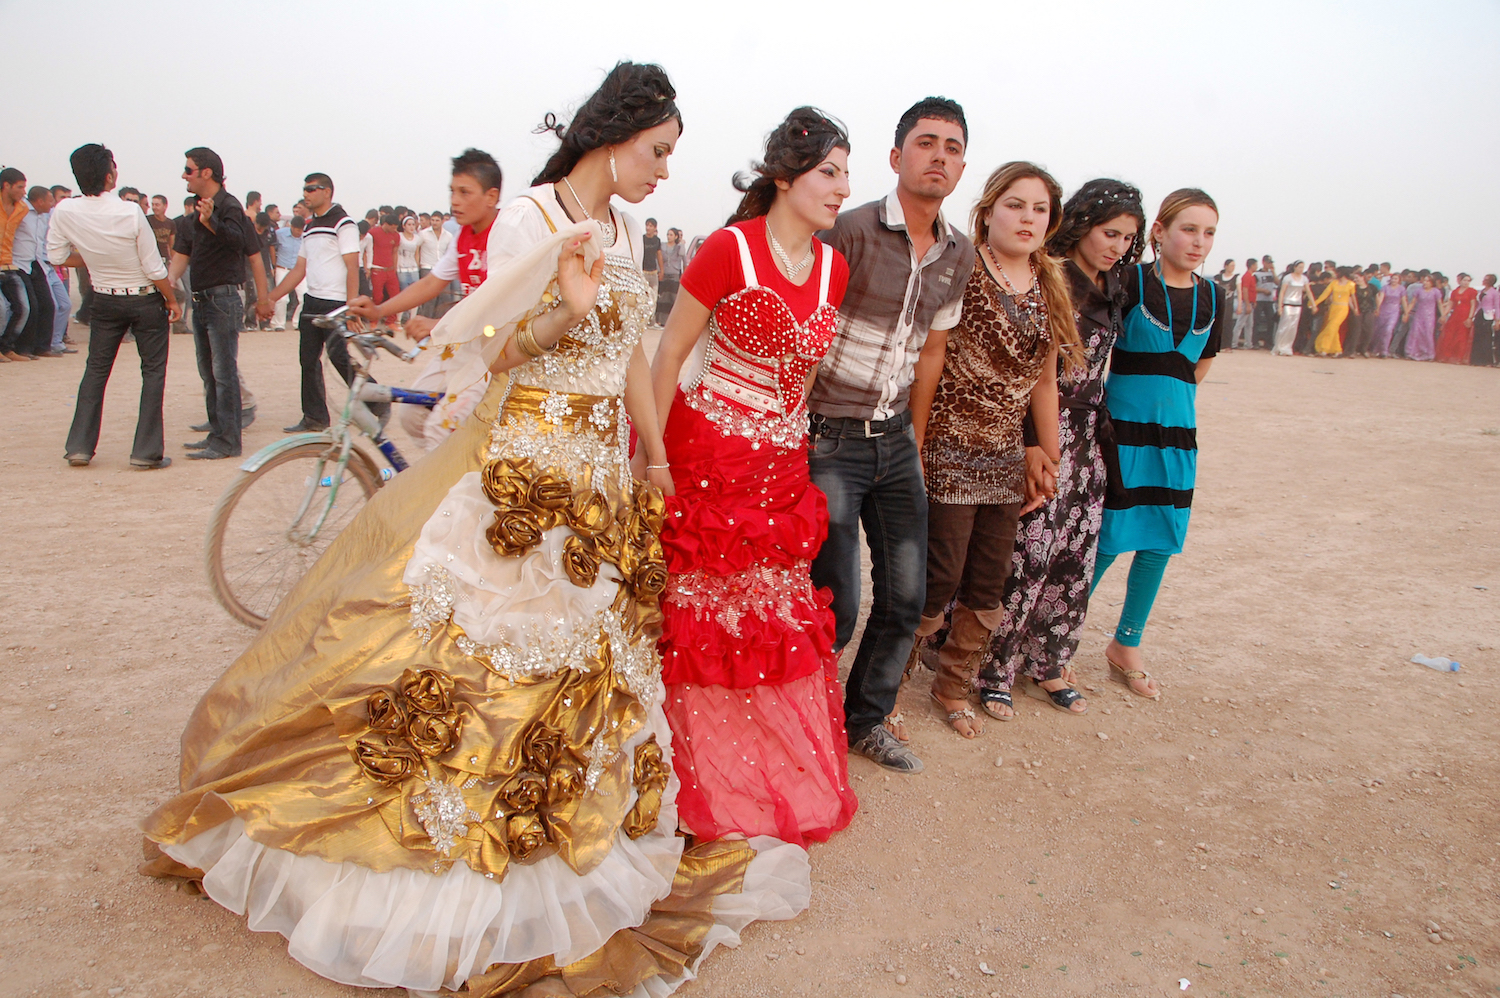 ヤズディー教徒の結婚式で、新郎新婦を祝福し、村の住民が数百人集まった。何もない砂漠で、男も女も手をつなぎ、歌に合わせて踊る。2年後、この村はISによって制圧された。（2012年7月 イラク北部 シンジャル郊外で撮影、Photography: Courtesy of 玉本英子）